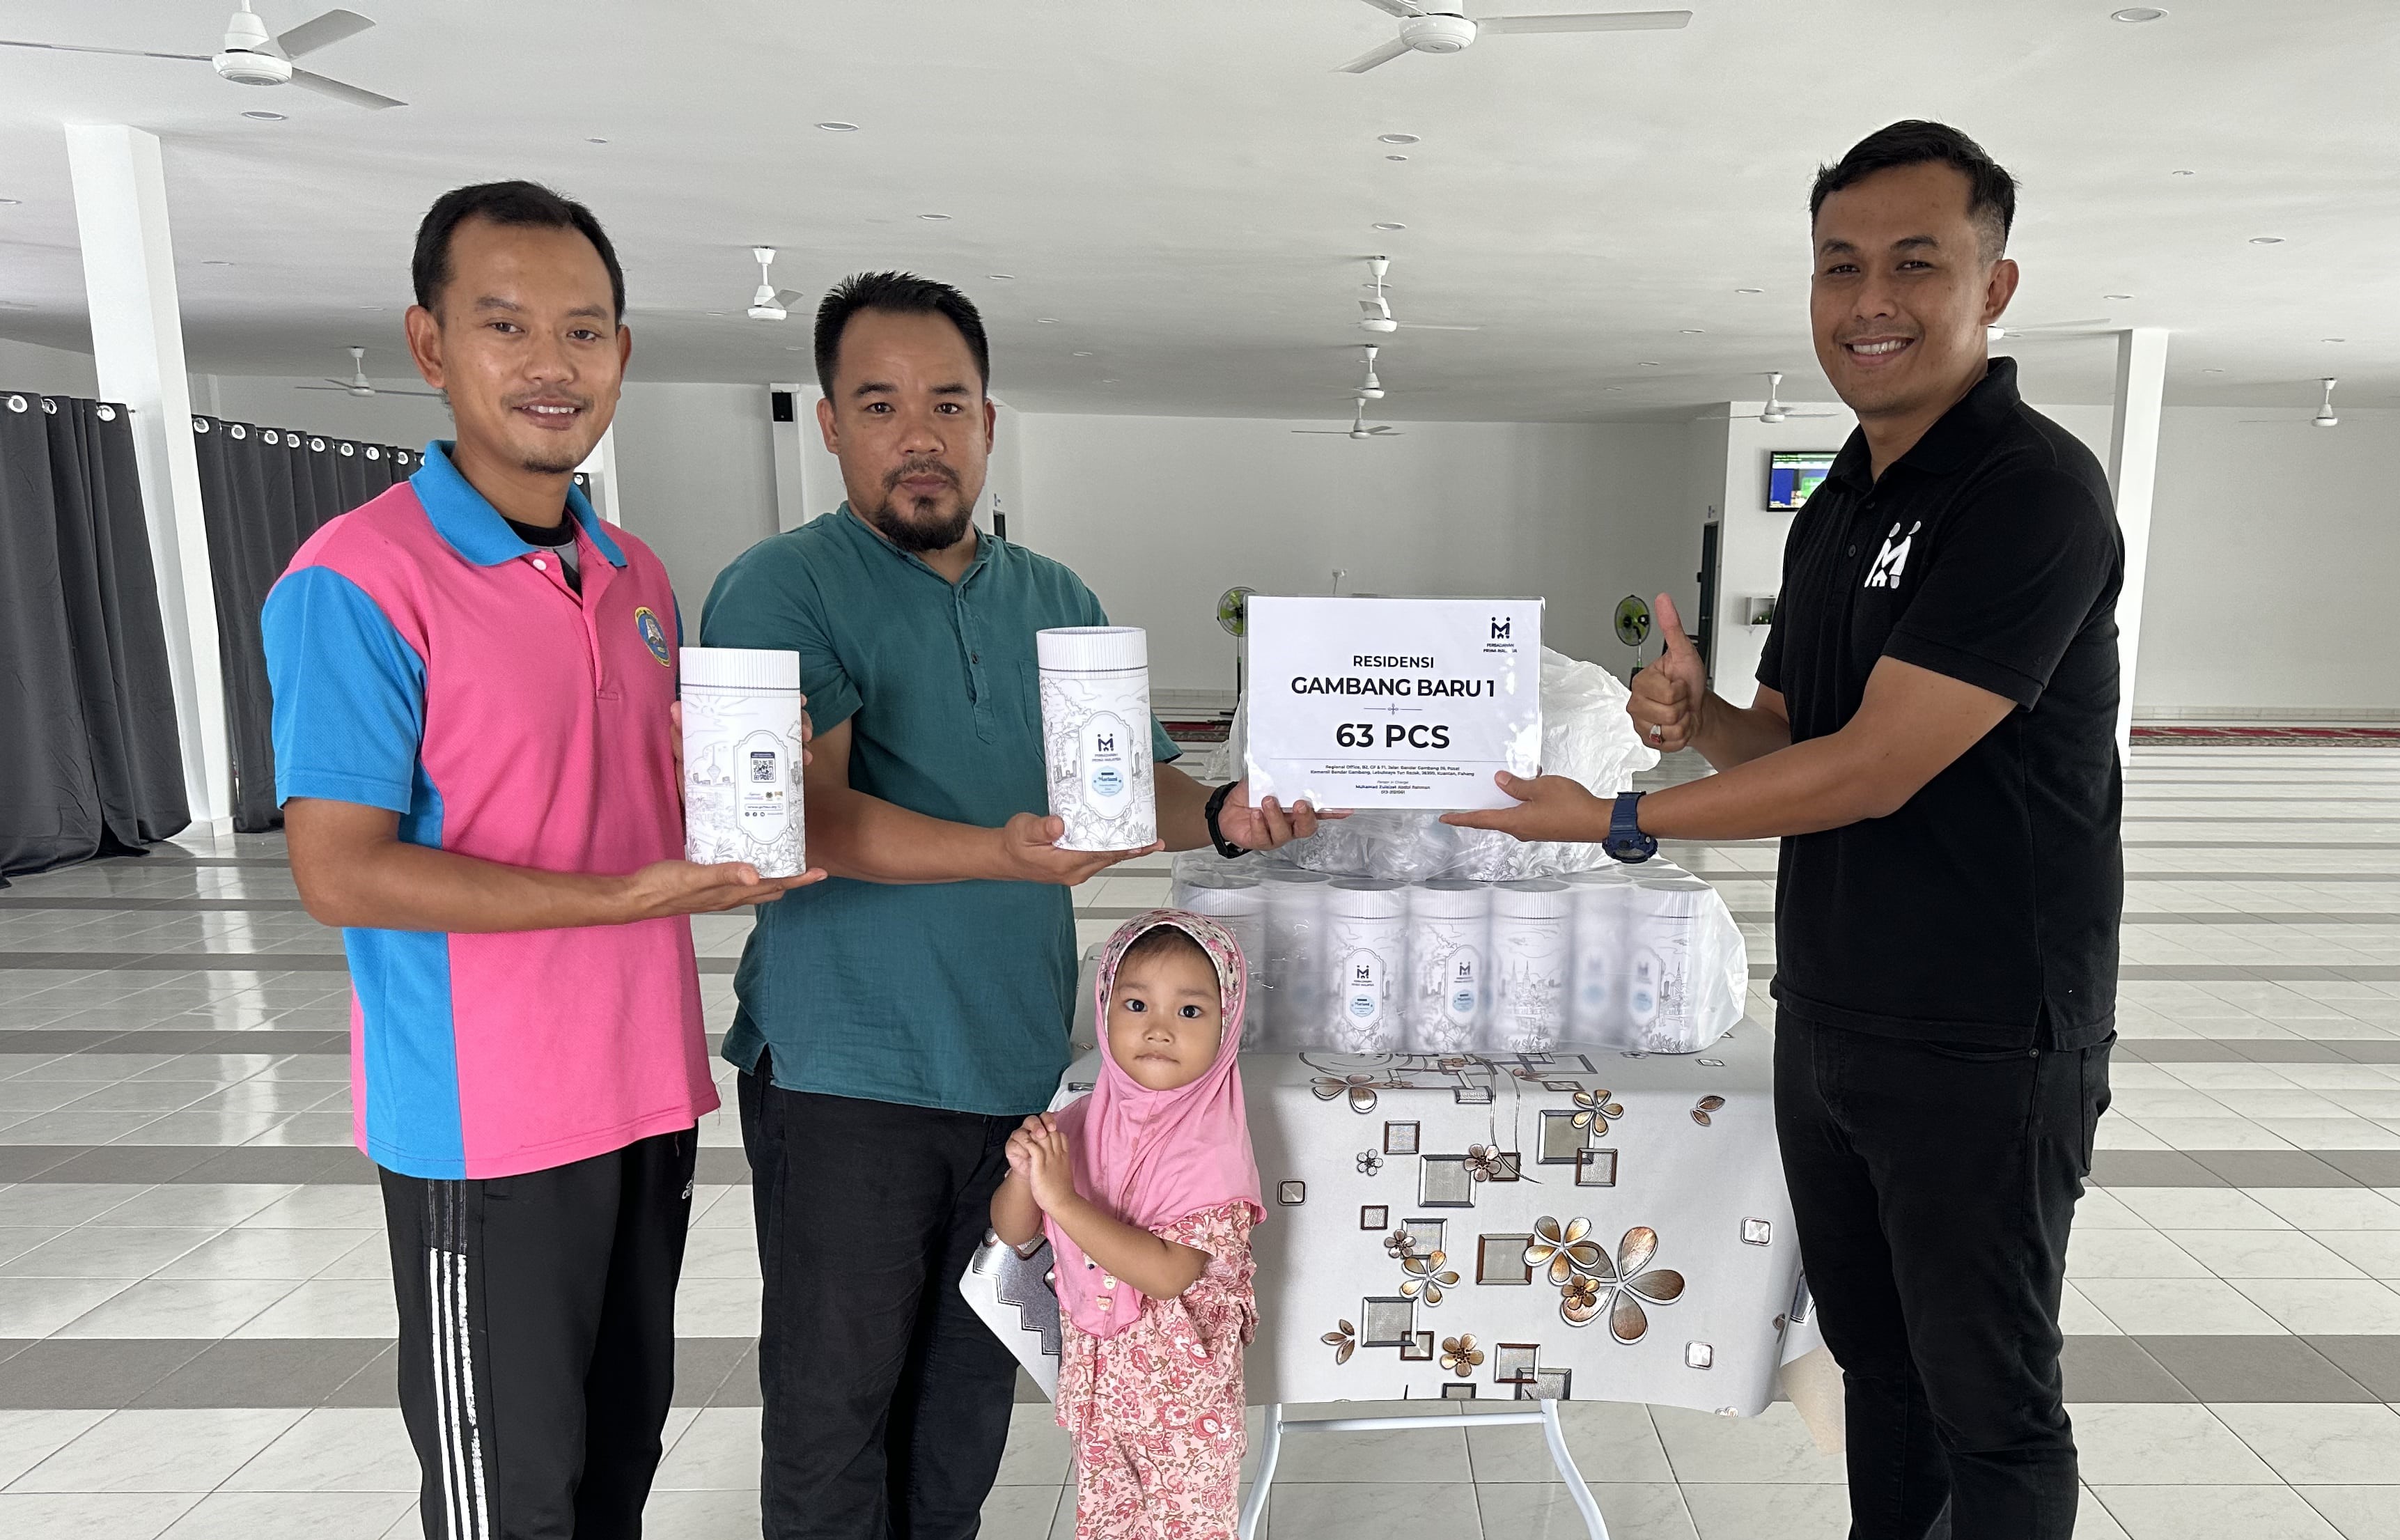 Cover image of Community Past Program: Sumbangan Ramadan – Distribution of Kurma to Residensi Gambang Baru 1, Pahang.